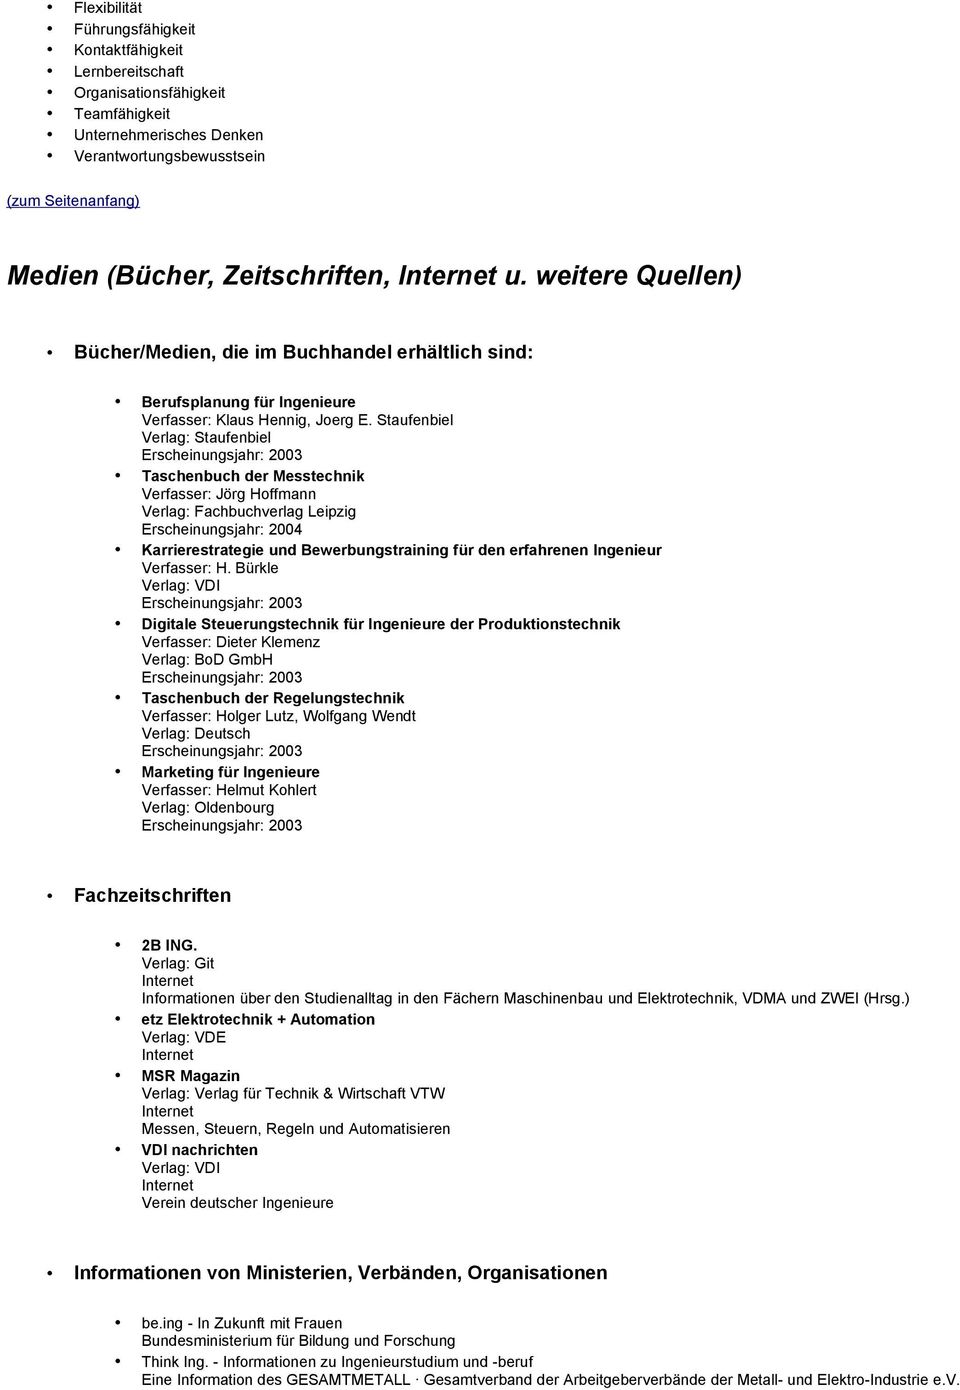 Staufenbiel Verlag: Staufenbiel Taschenbuch der Messtechnik Verfasser: Jörg Hoffmann Verlag: Fachbuchverlag Leipzig Erscheinungsjahr: 2004 Karrierestrategie und Bewerbungstraining für den erfahrenen